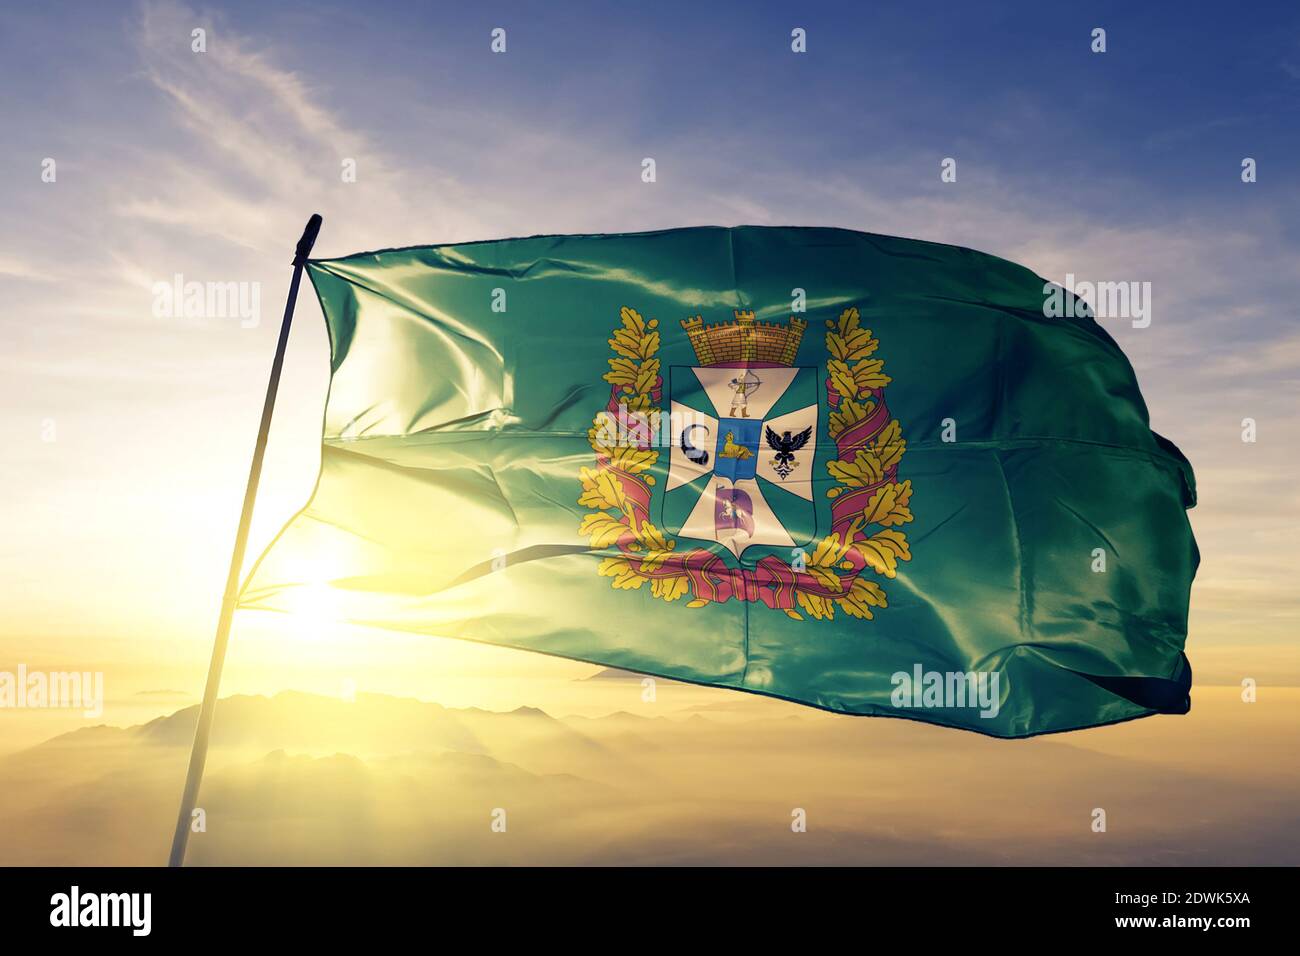 La région oblast de Homyel du Belarus drapeau agitant sur le dessus brume de lever de soleil Banque D'Images